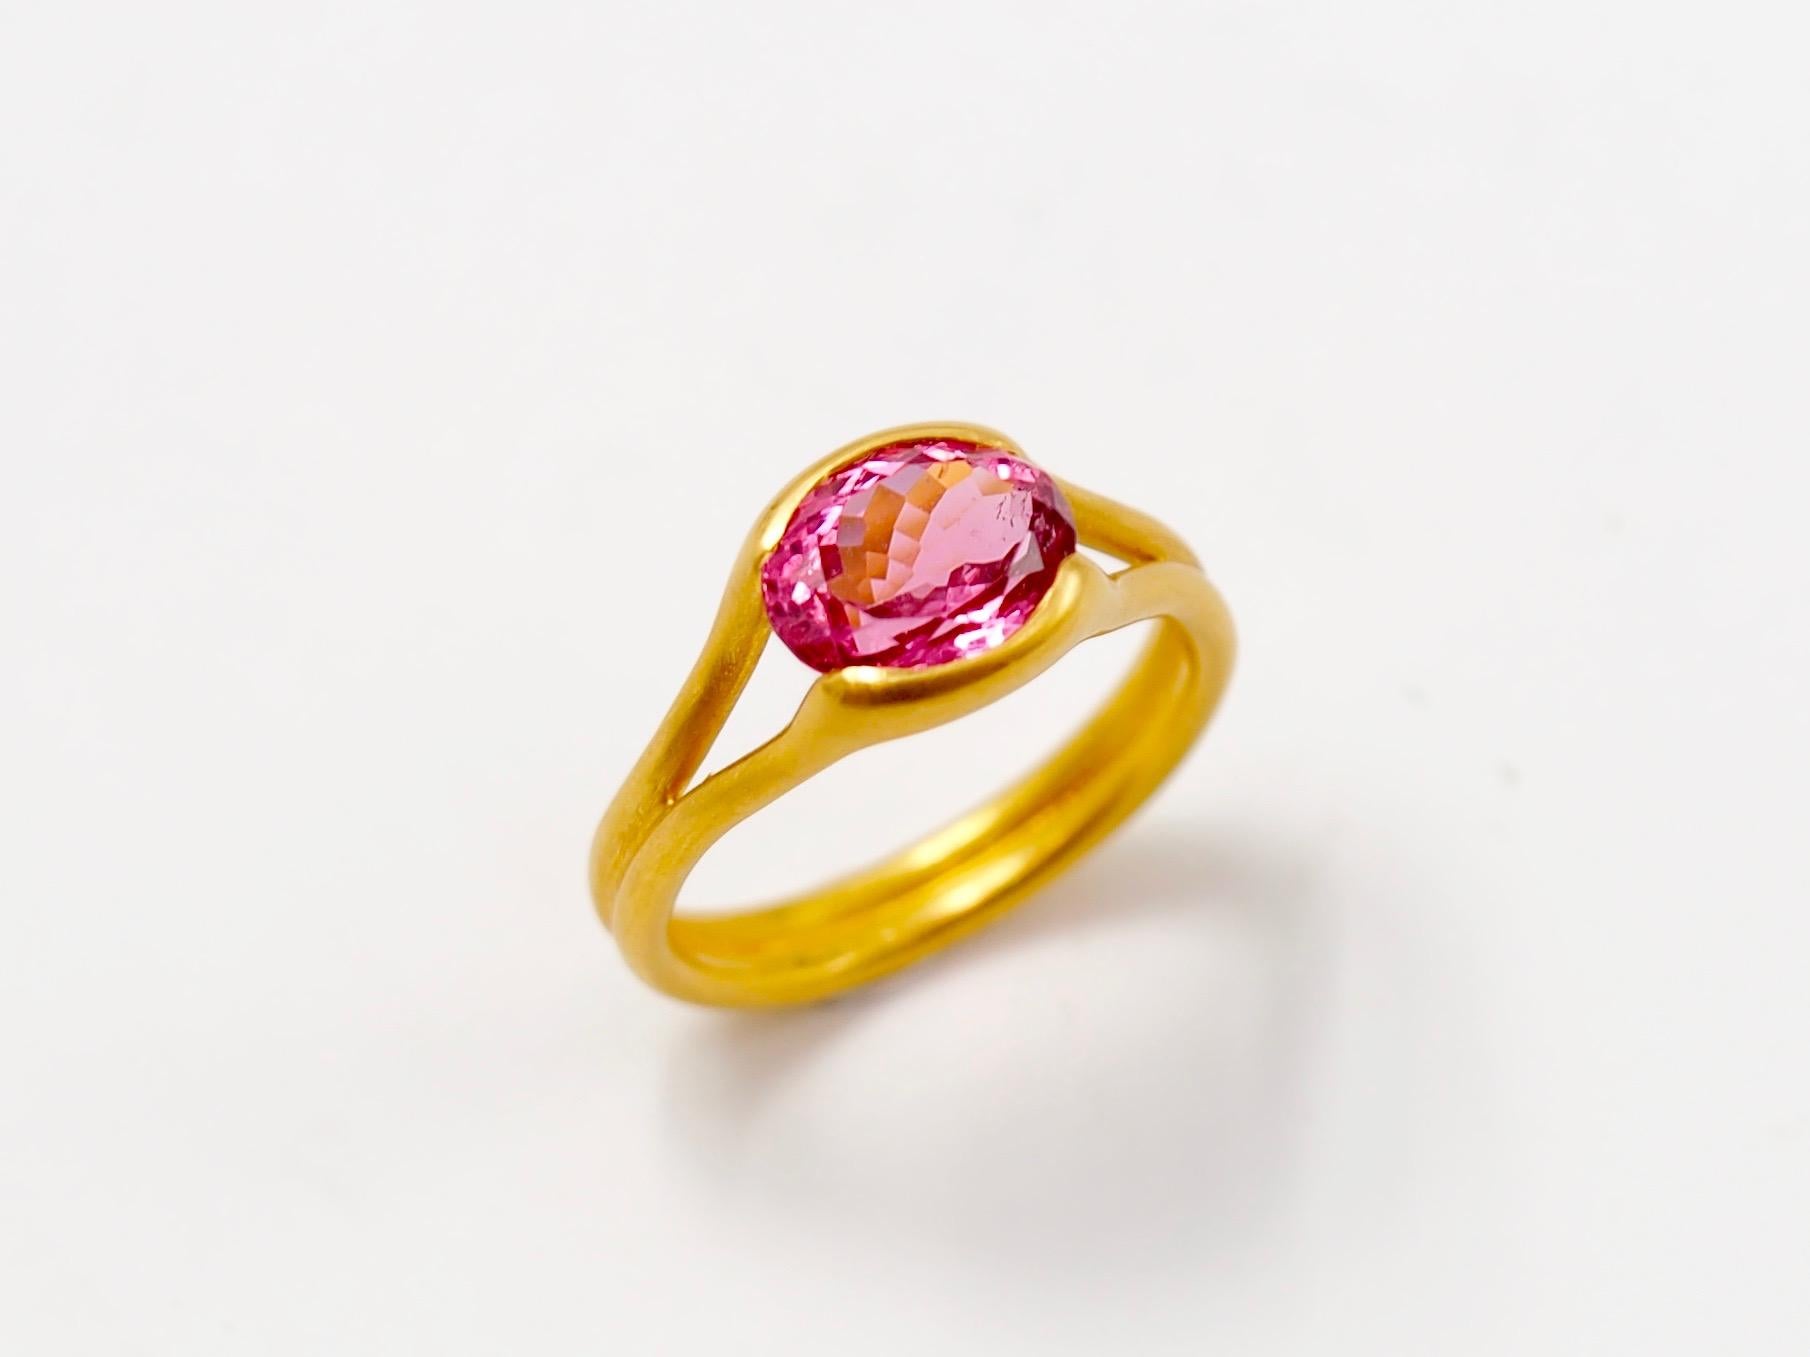 Dieser zarte Ring von Scrives besteht aus einem pinkfarbenen Turmalin von 2,38 Karat. 

Der Stein wird von 2 Goldlinien gehalten, die das Band bilden. Dieses Design ermöglicht es dem Licht, aus verschiedenen Richtungen in den Stein einzudringen und